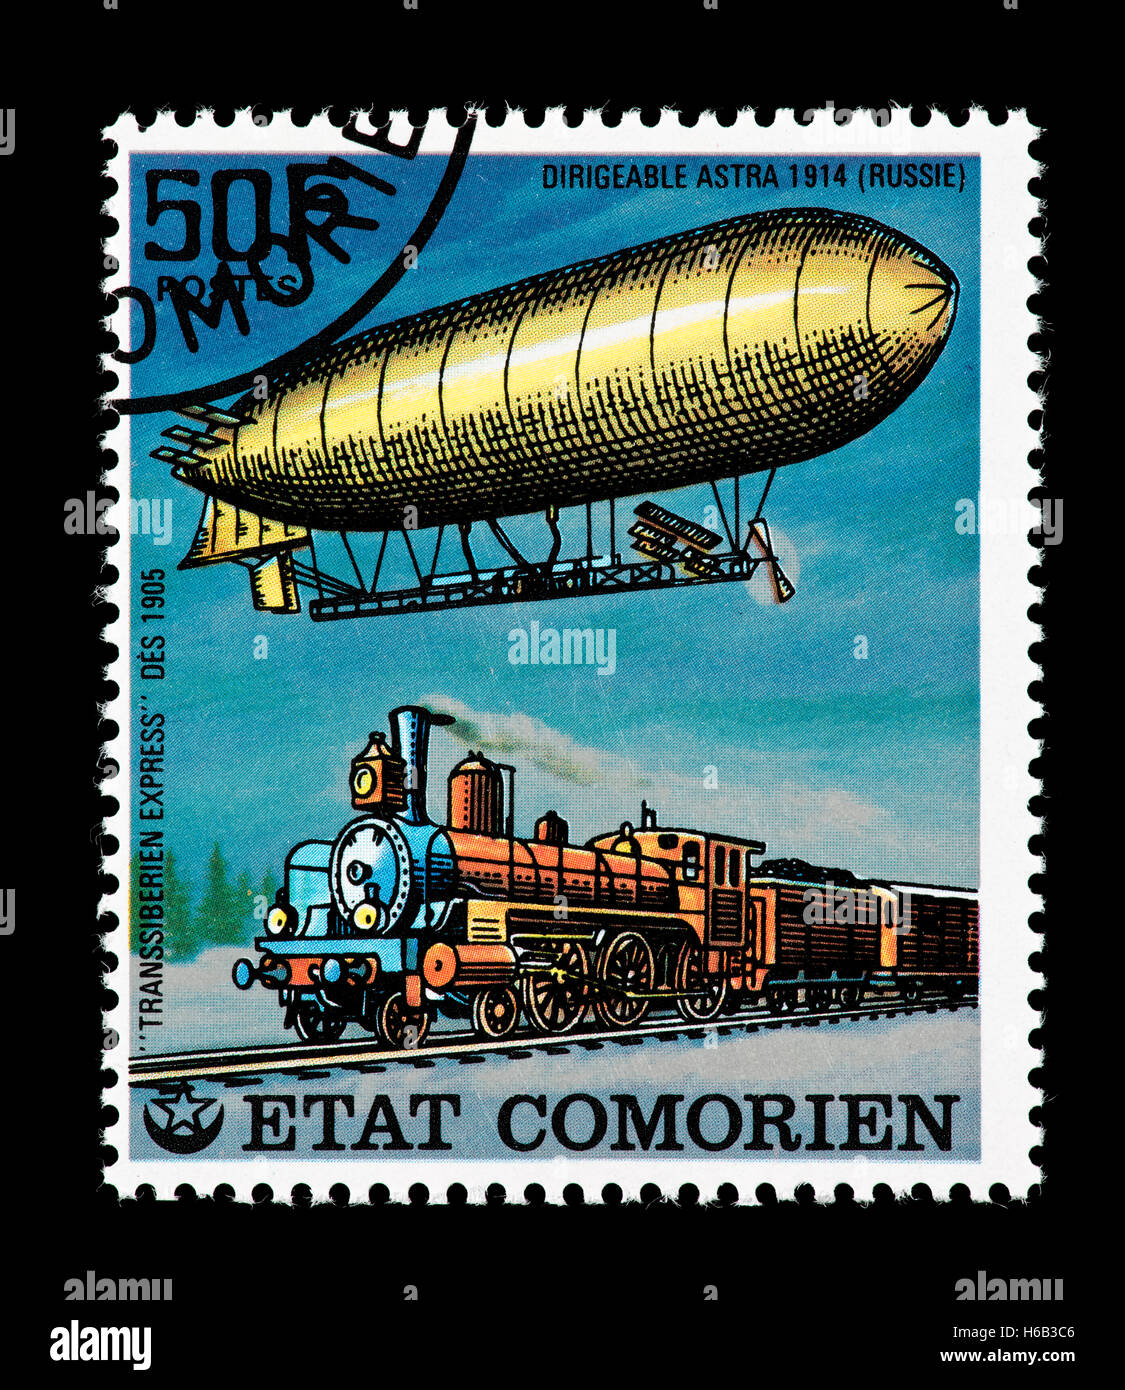 Briefmarke aus den Komoren Darstellung der Astra-Luftschiff (1914) und der Trans-Siberian Express (1905). Stockfoto